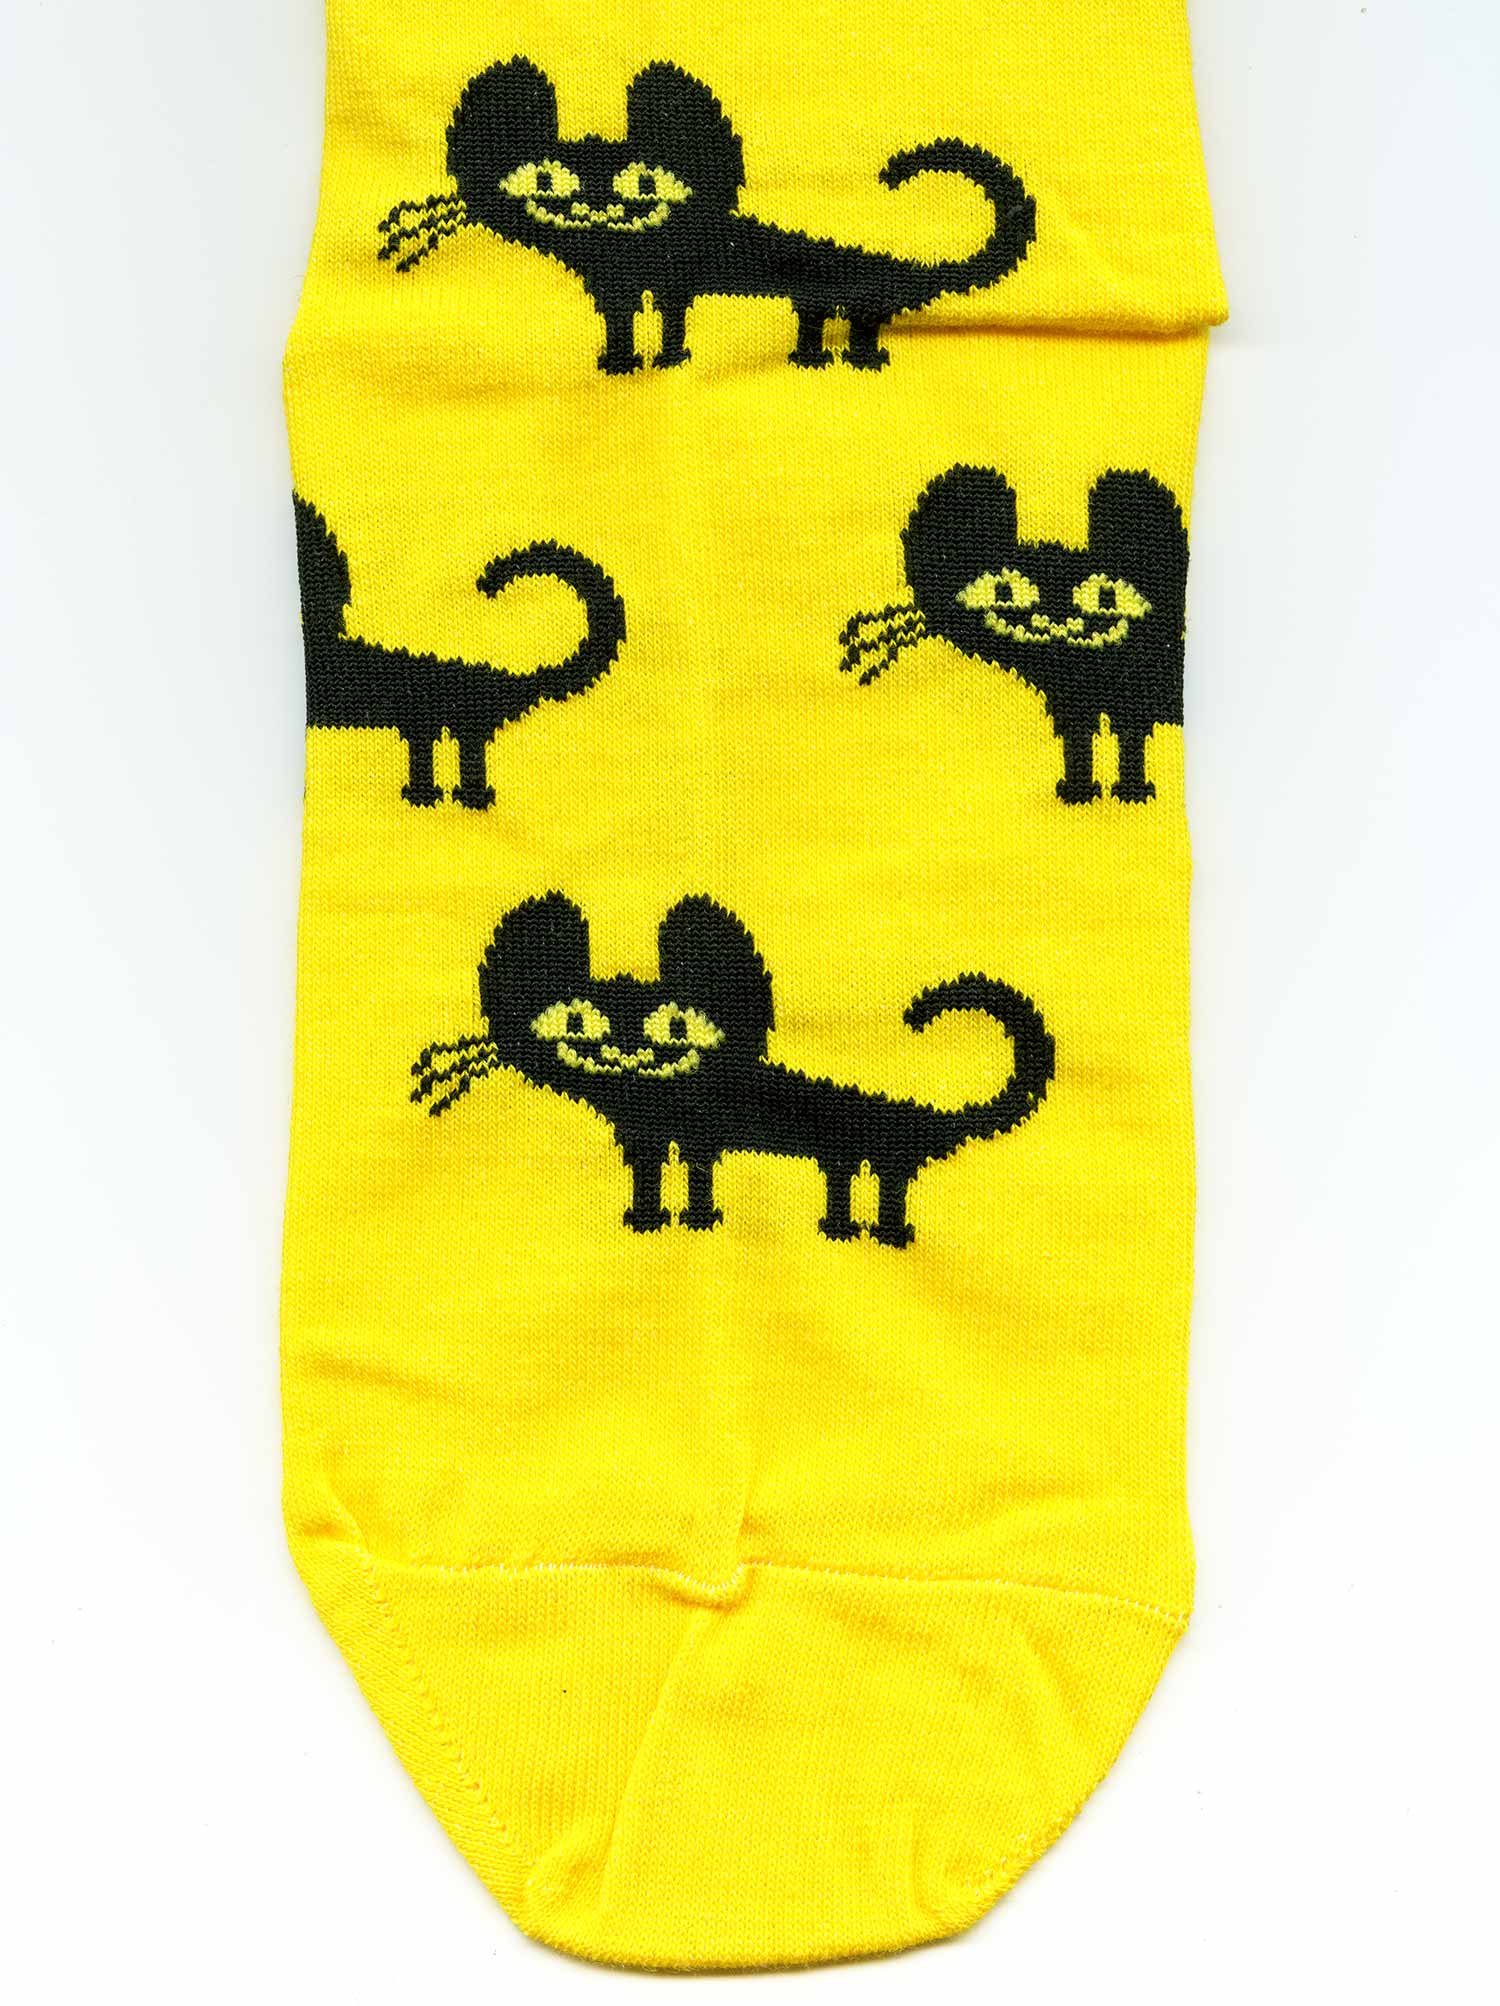 Носки с чёрными кошками St.Friday Socks. bracatuS.com